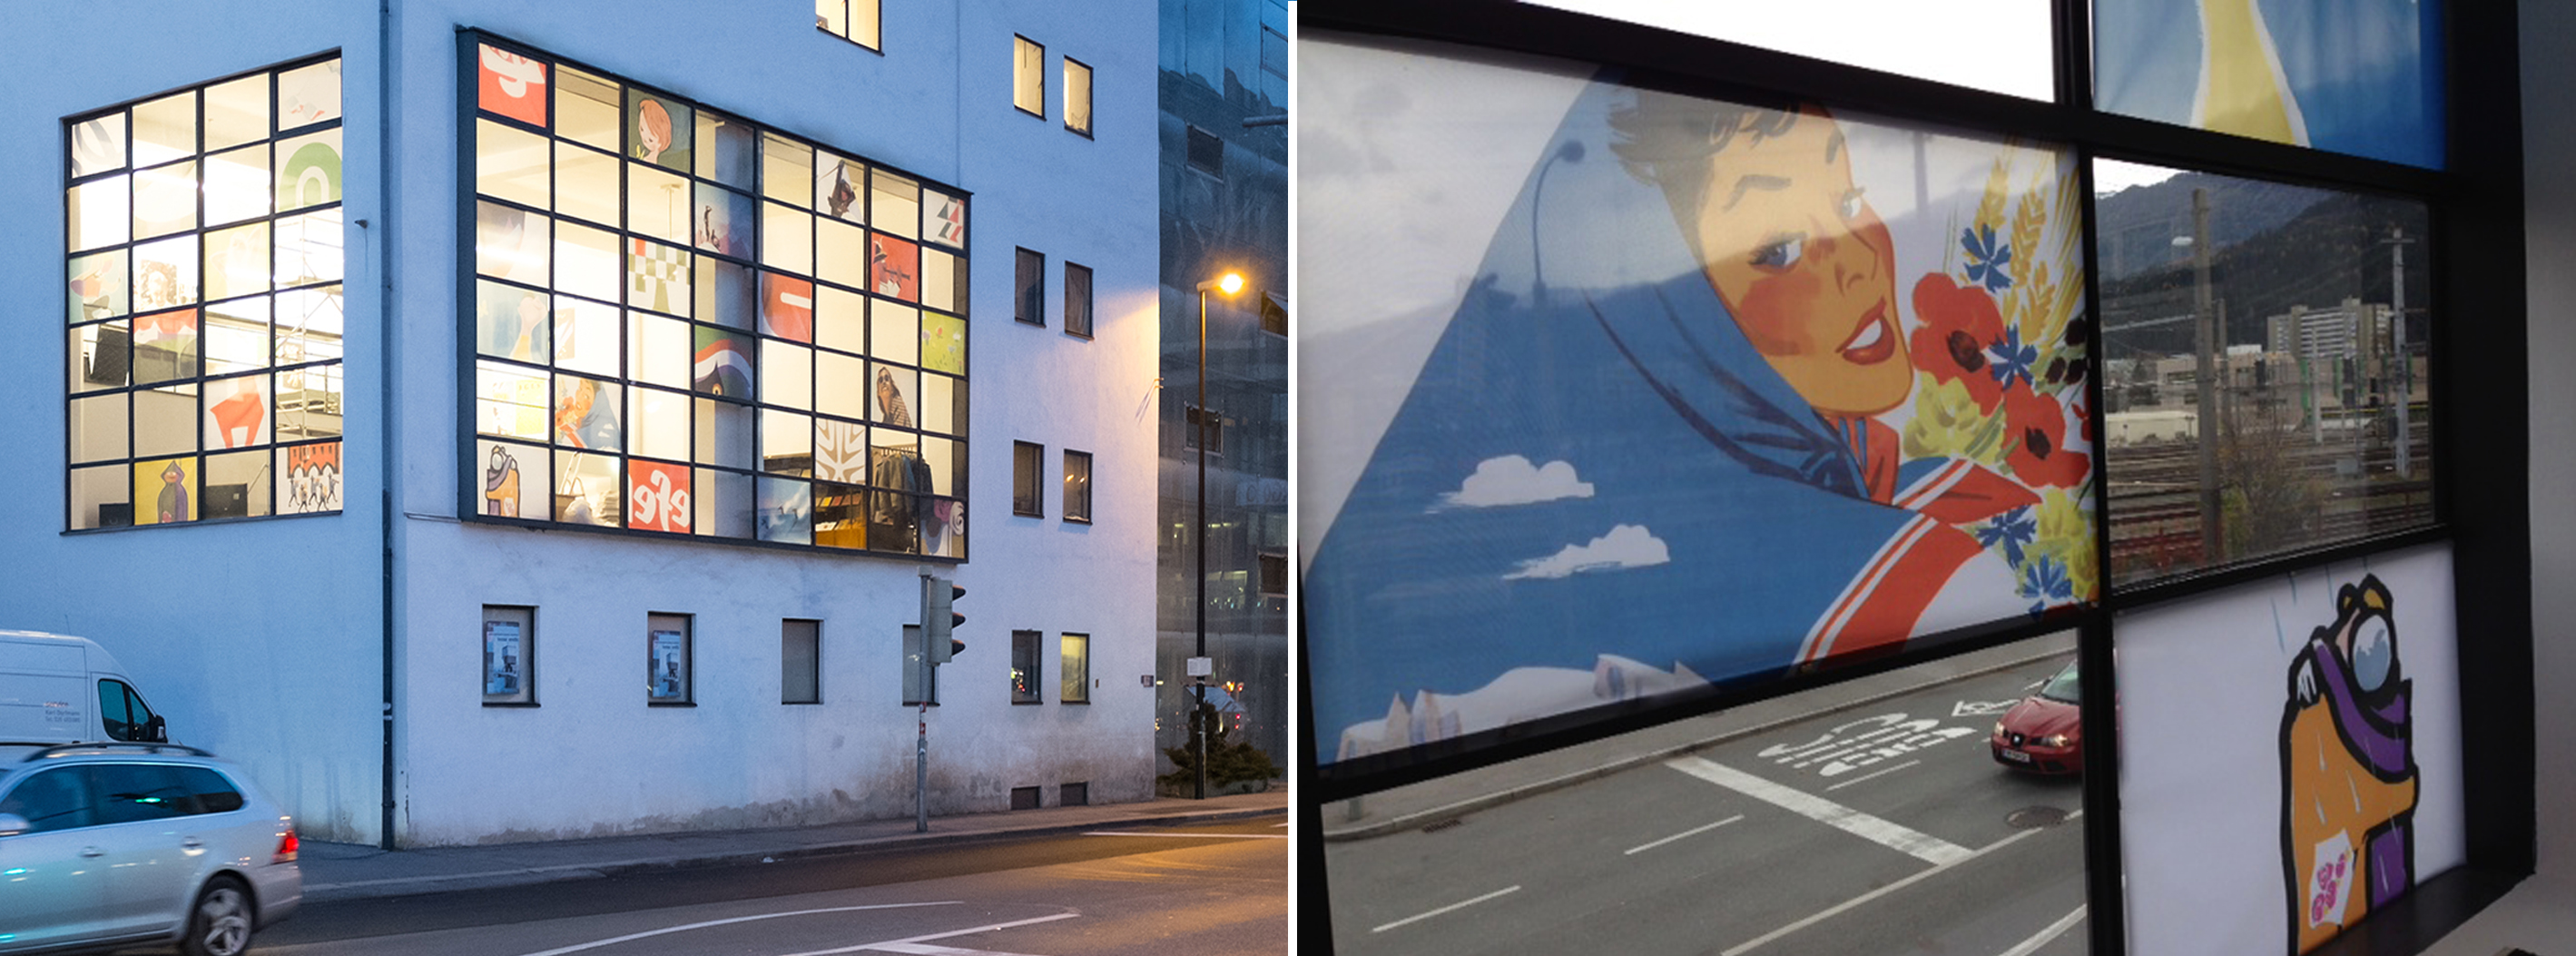 Textile Netzdrucke aus Fensterdekoration/Ausstellung in den Maßen ca 120x85 cm, unterschiedliche Bildausschnitte 